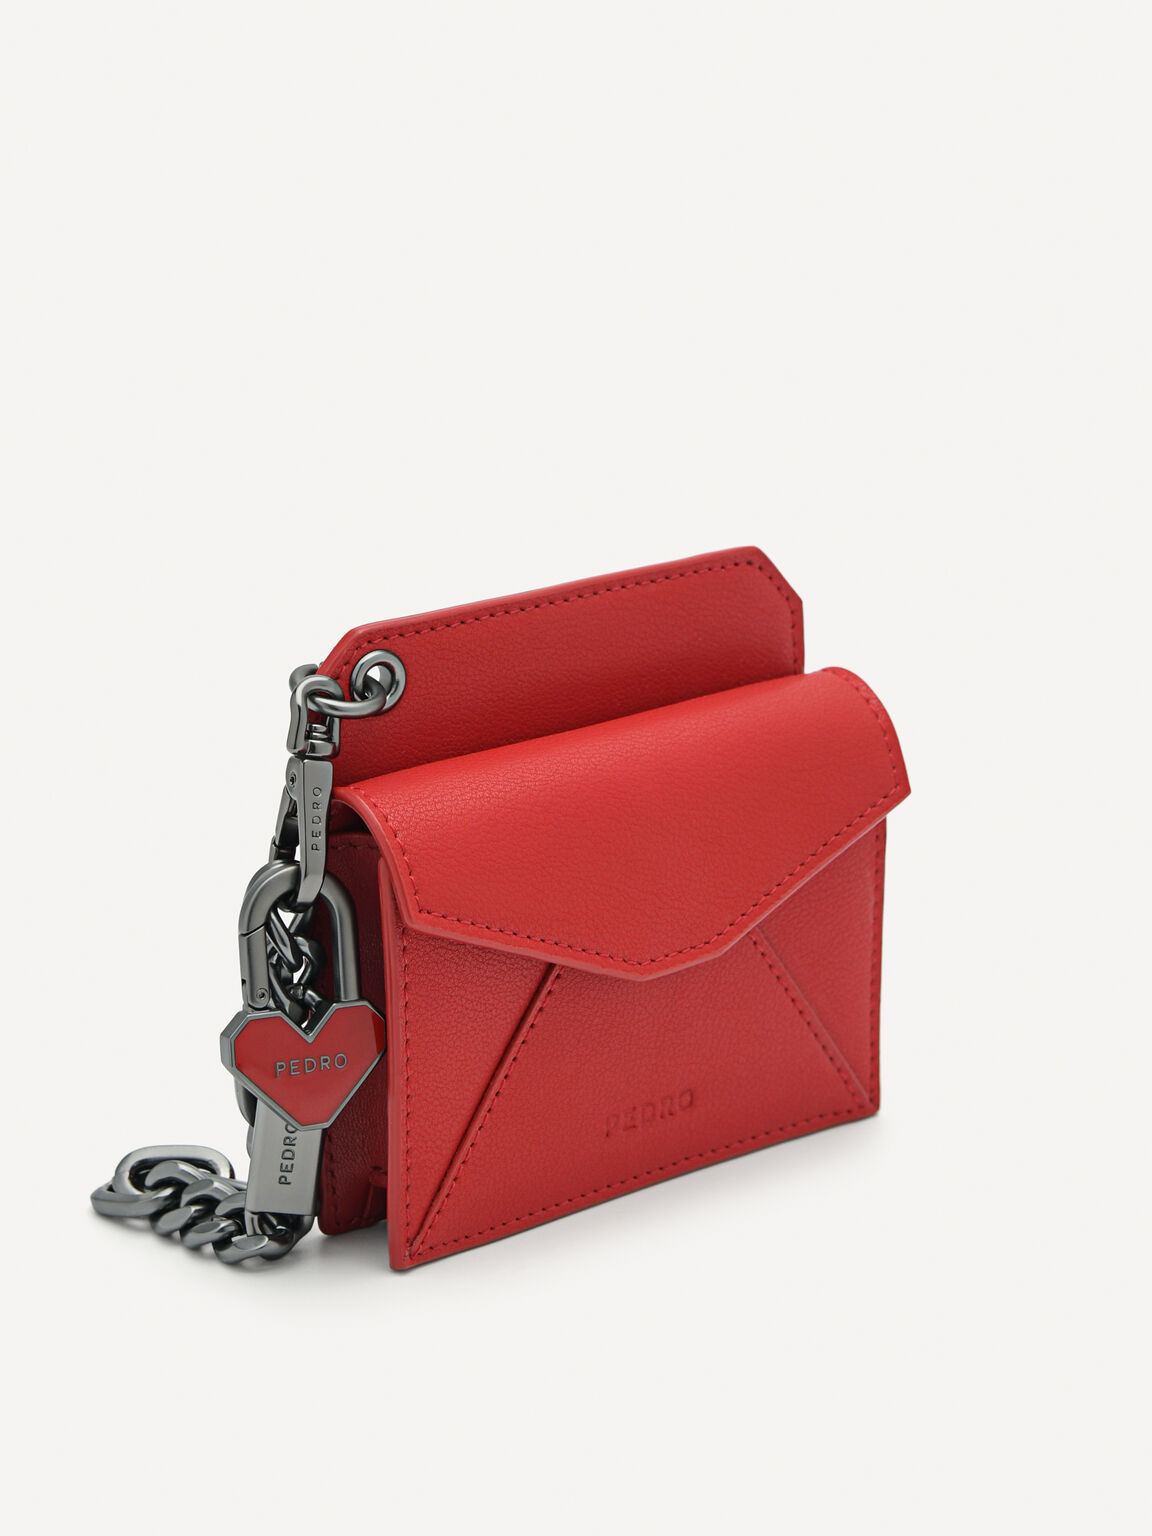 皮革雙折疊卡包帶鑰匙鏈, 红色